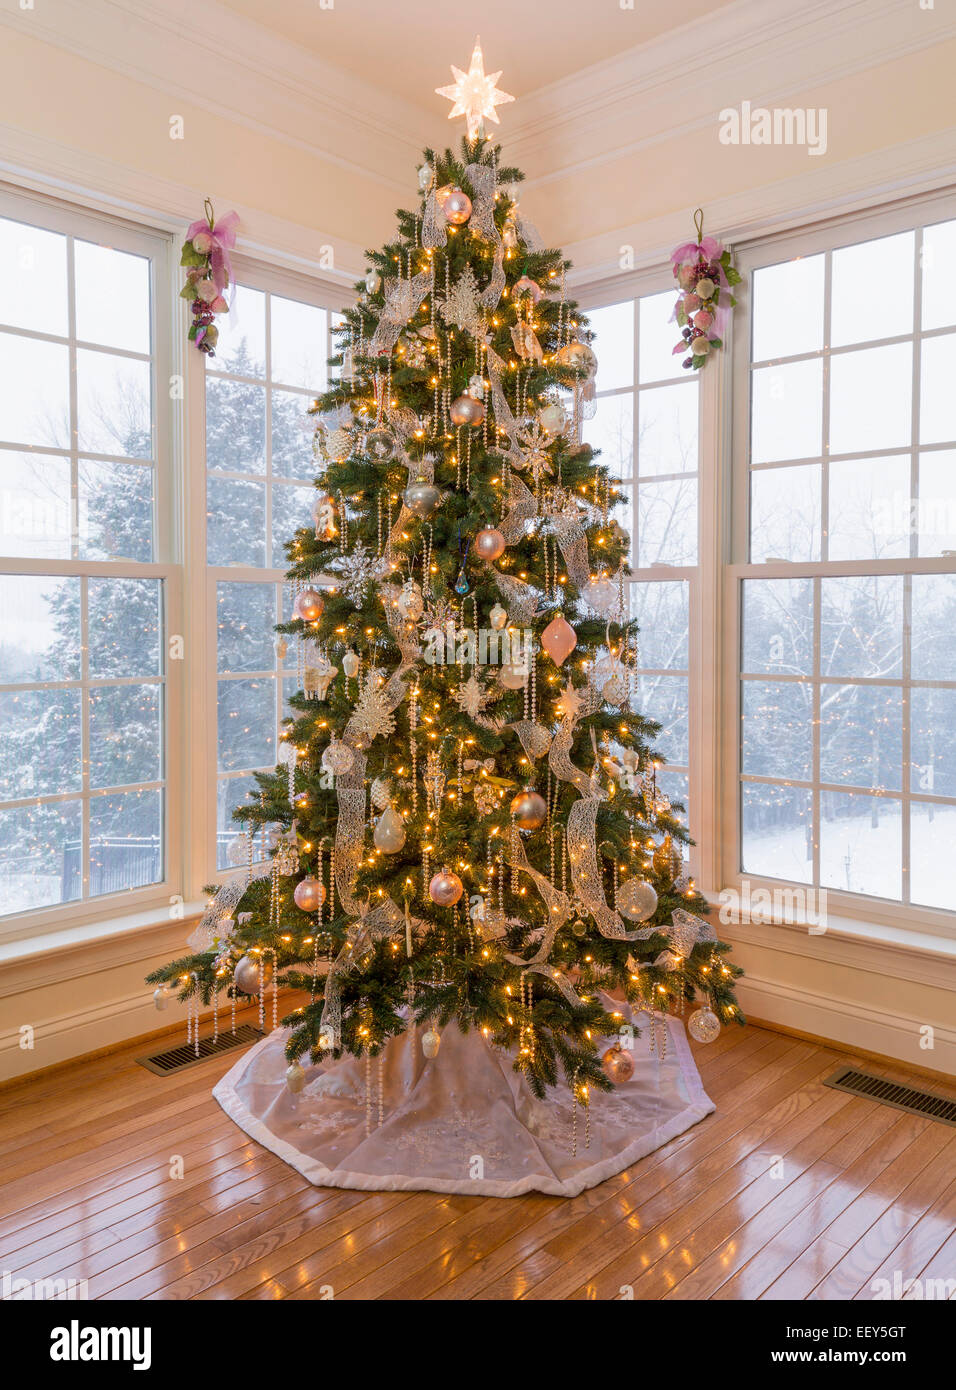 Weihnachtsbaum in modernen Haus mit Schnee fallen Stockfoto